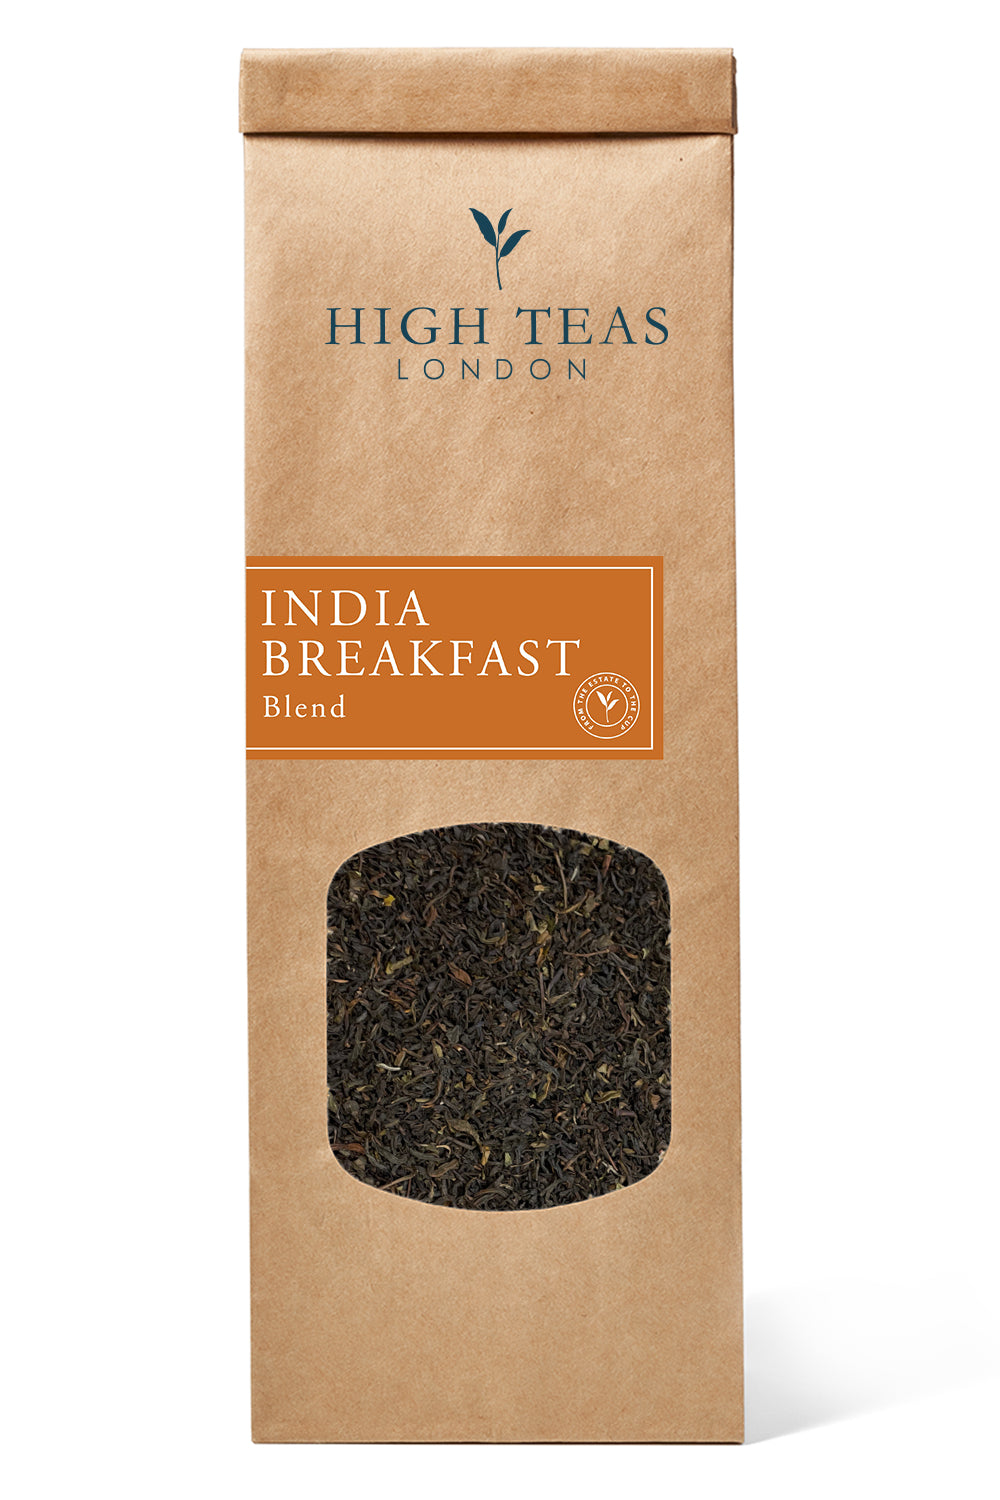 India Breakfast Blend-50g-Loose Leaf Tea-High Teas